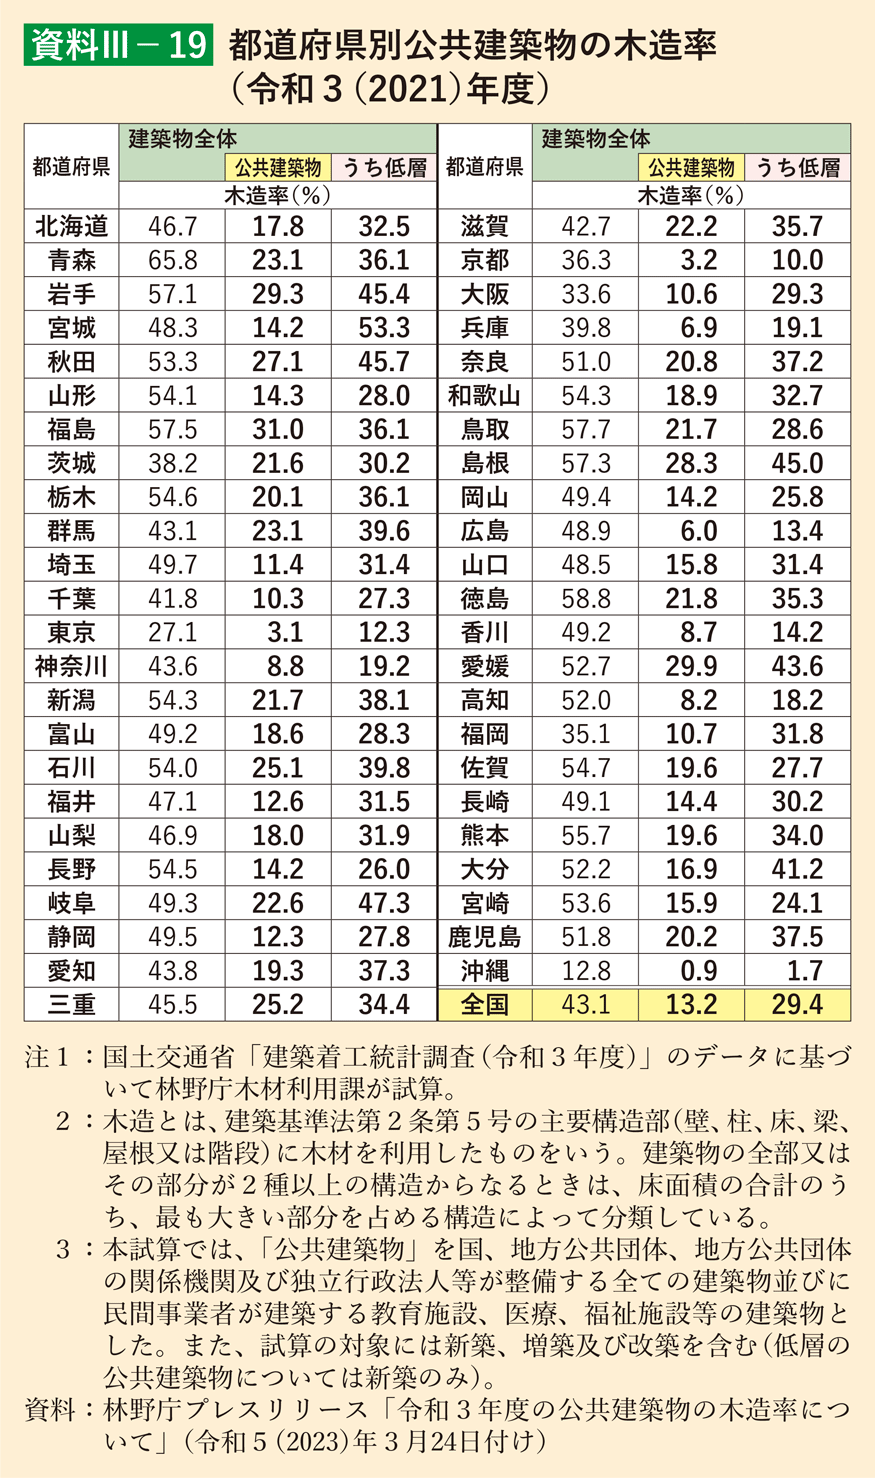 資料3-19 都道府県別公共建築物の木造率（令和3（2021）年度）